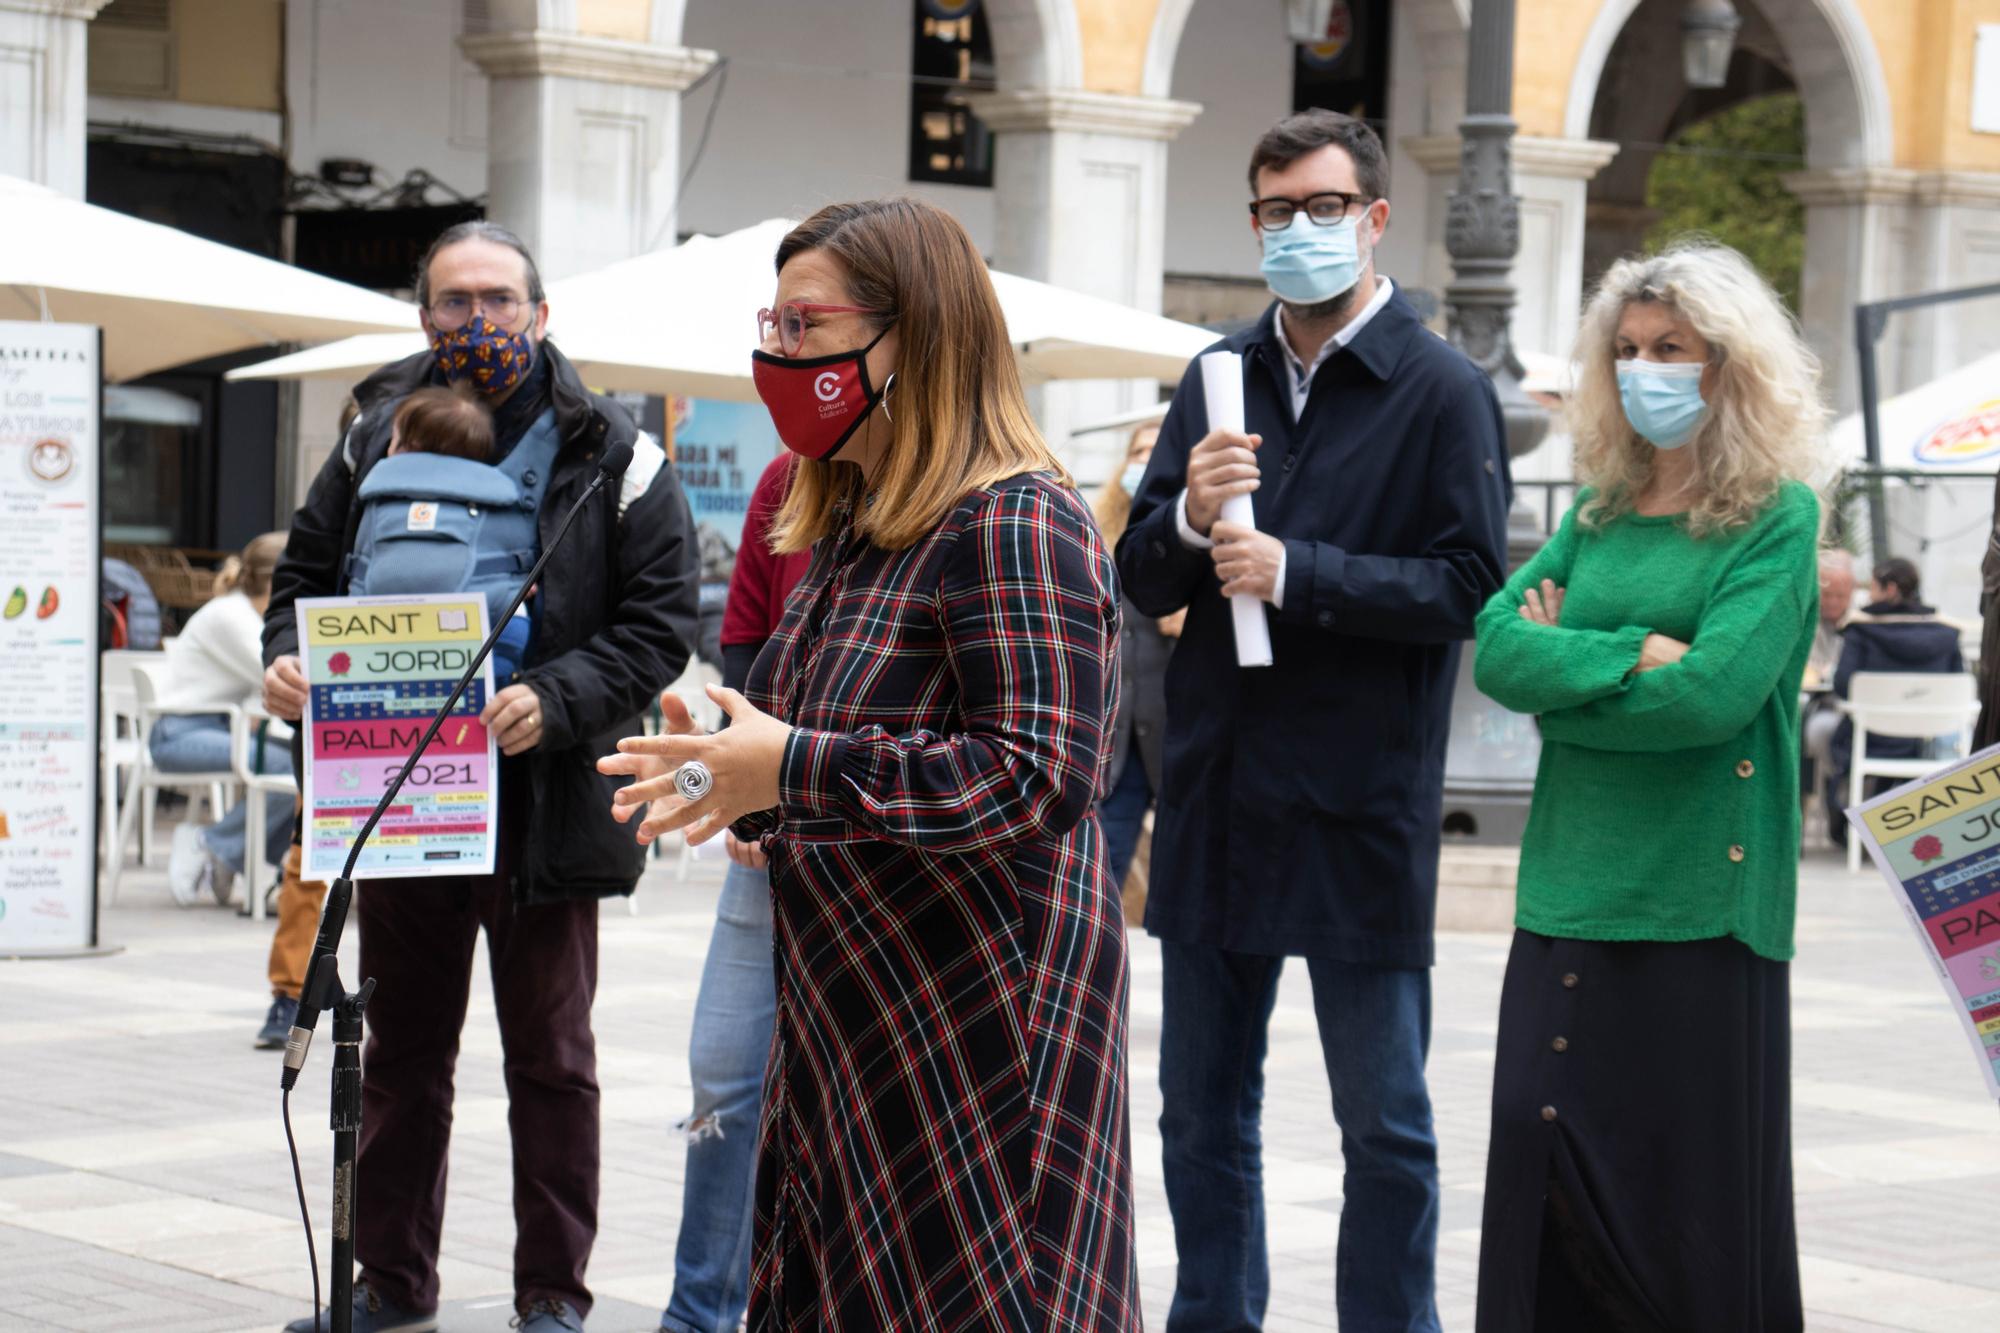 Mallorca organiza un Sant Jordi solo para las librerías